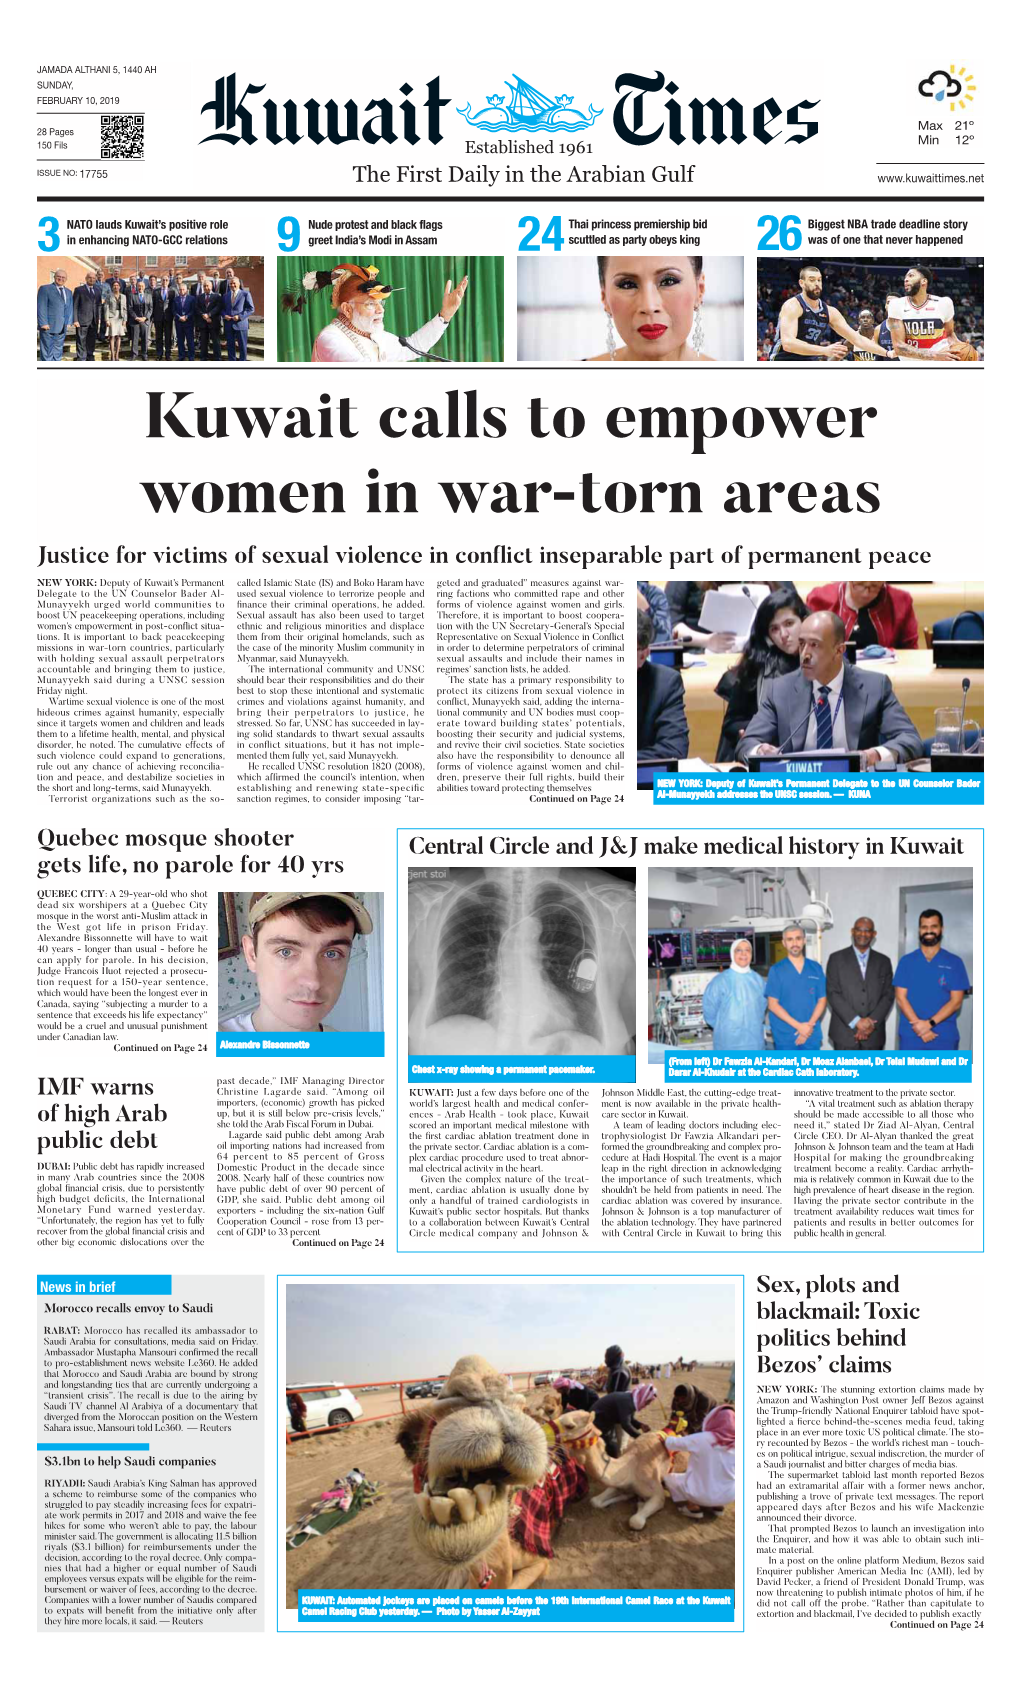 Kuwait Calls to Empower Women in War-Torn Areas